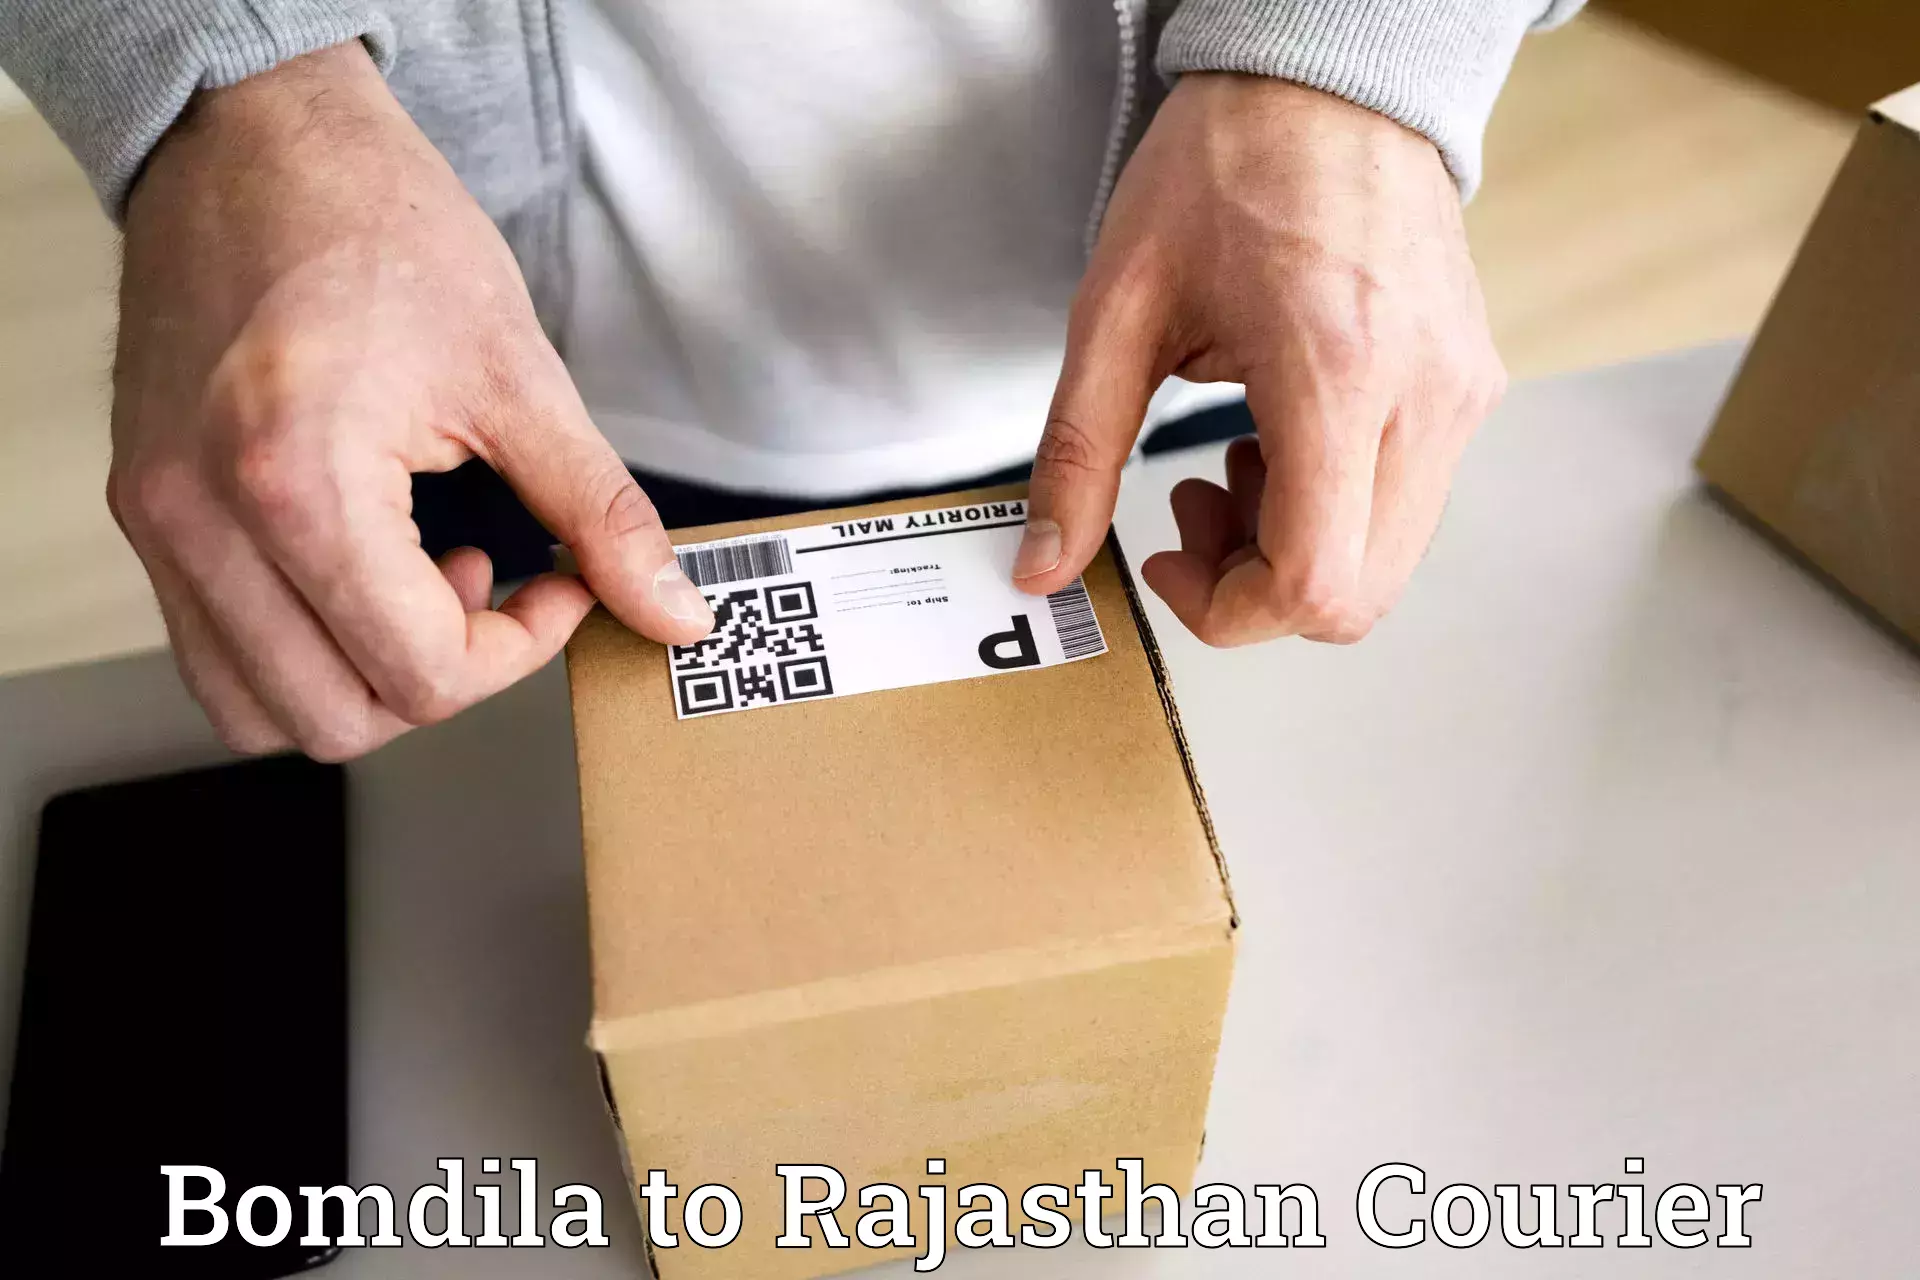 Professional courier handling Bomdila to Simalwara